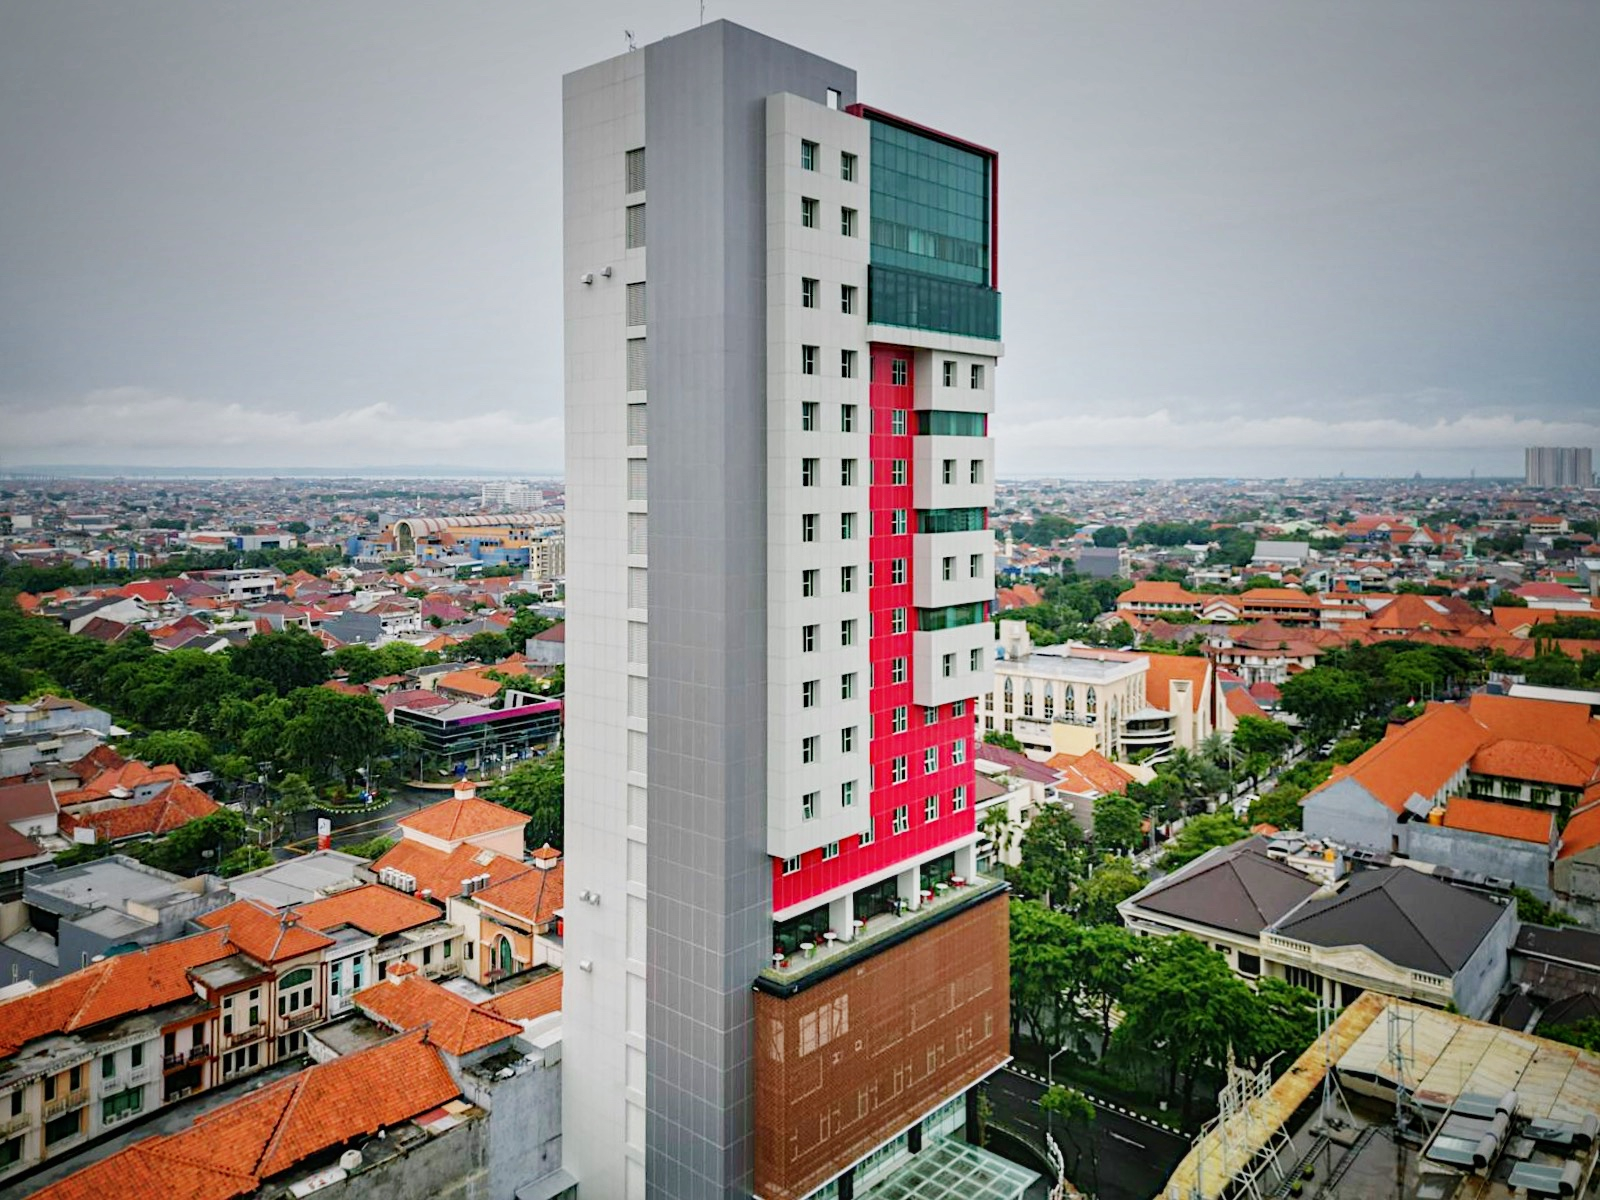 Leedon Hotel & Suites Surabaya, Surabaya